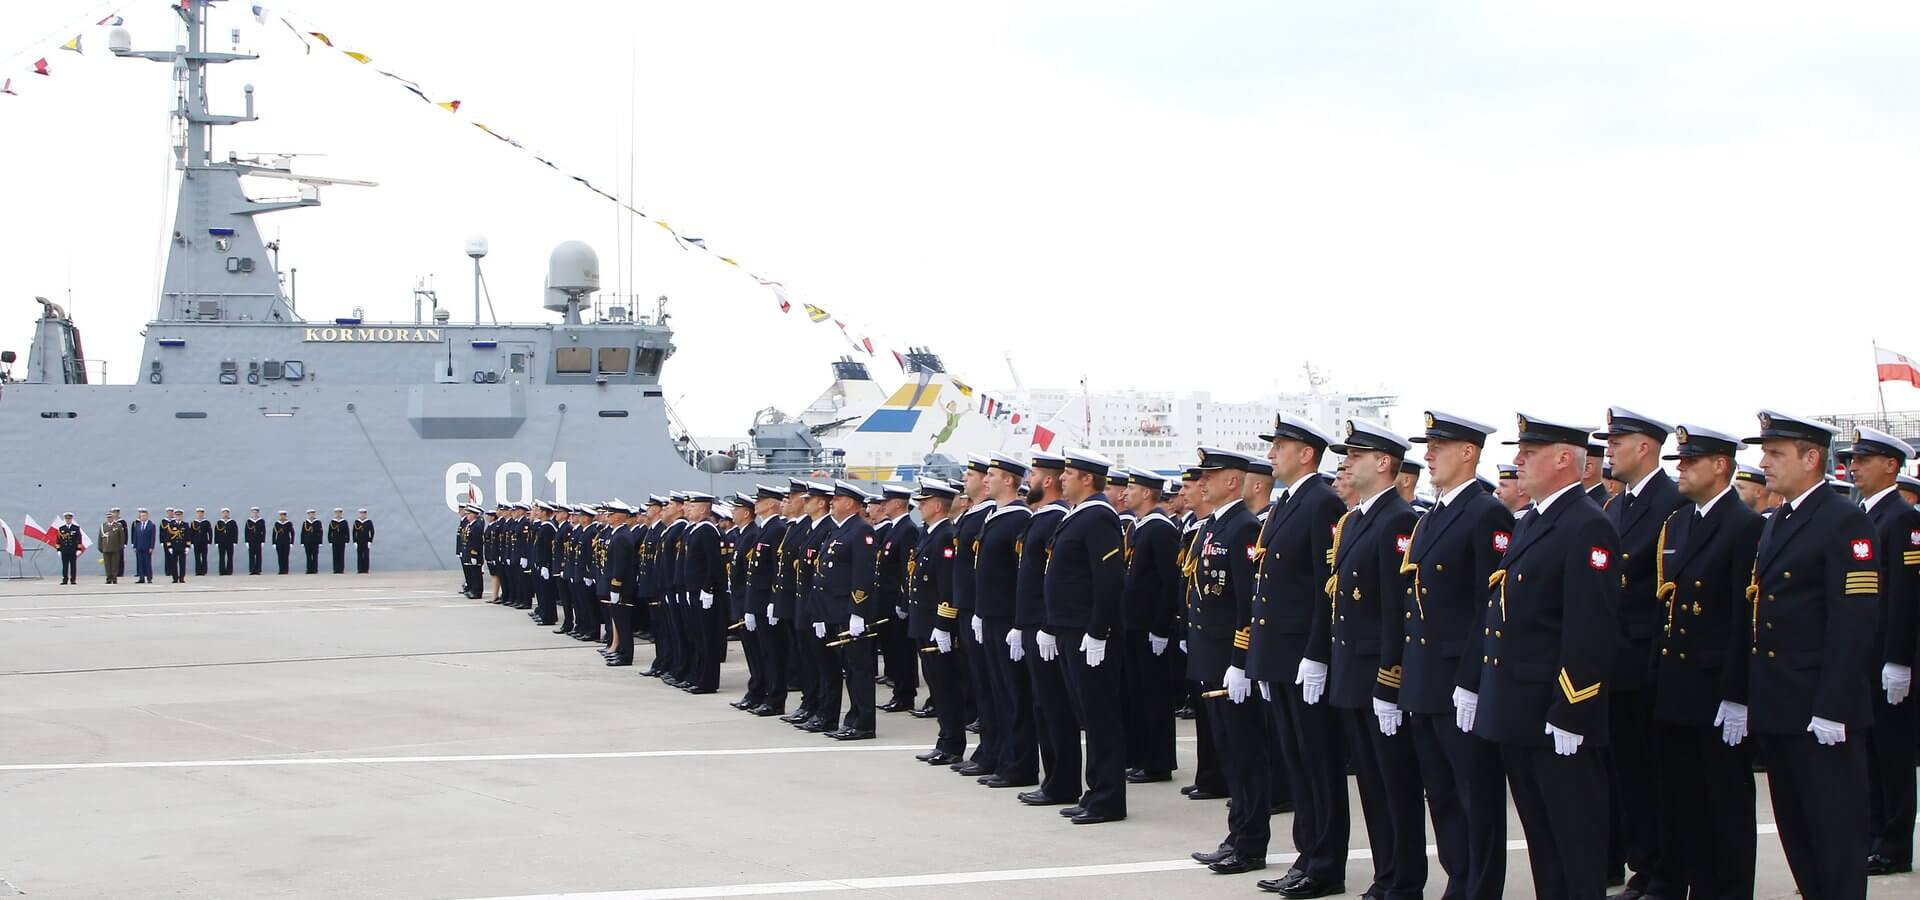 Świnoujście. Święto Marynarki Wojennej i podpisanie umowy na niszczyciele min dla 12.dTR.